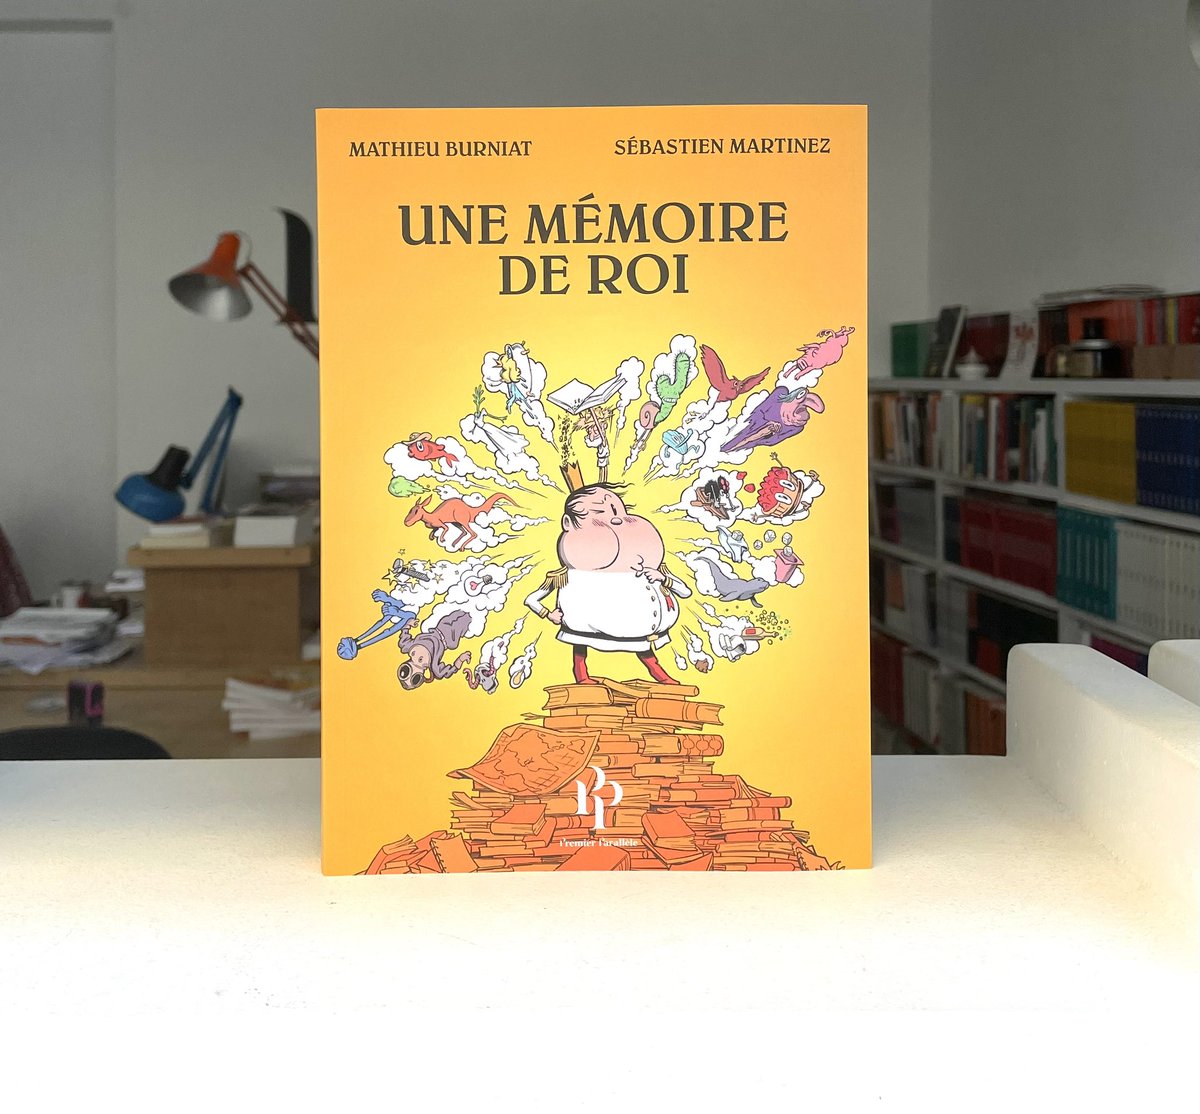 Elle était en rupture depuis quelques mois. La bande dessinée Une mémoire de roi, de Matthieu Burniat et Sébastien Martinez, s’est refait une beauté et paraît dans une nouvelle édition souple.

Elle sera en librairie le 30 mai.

#artsdemémoire #bandesessinee